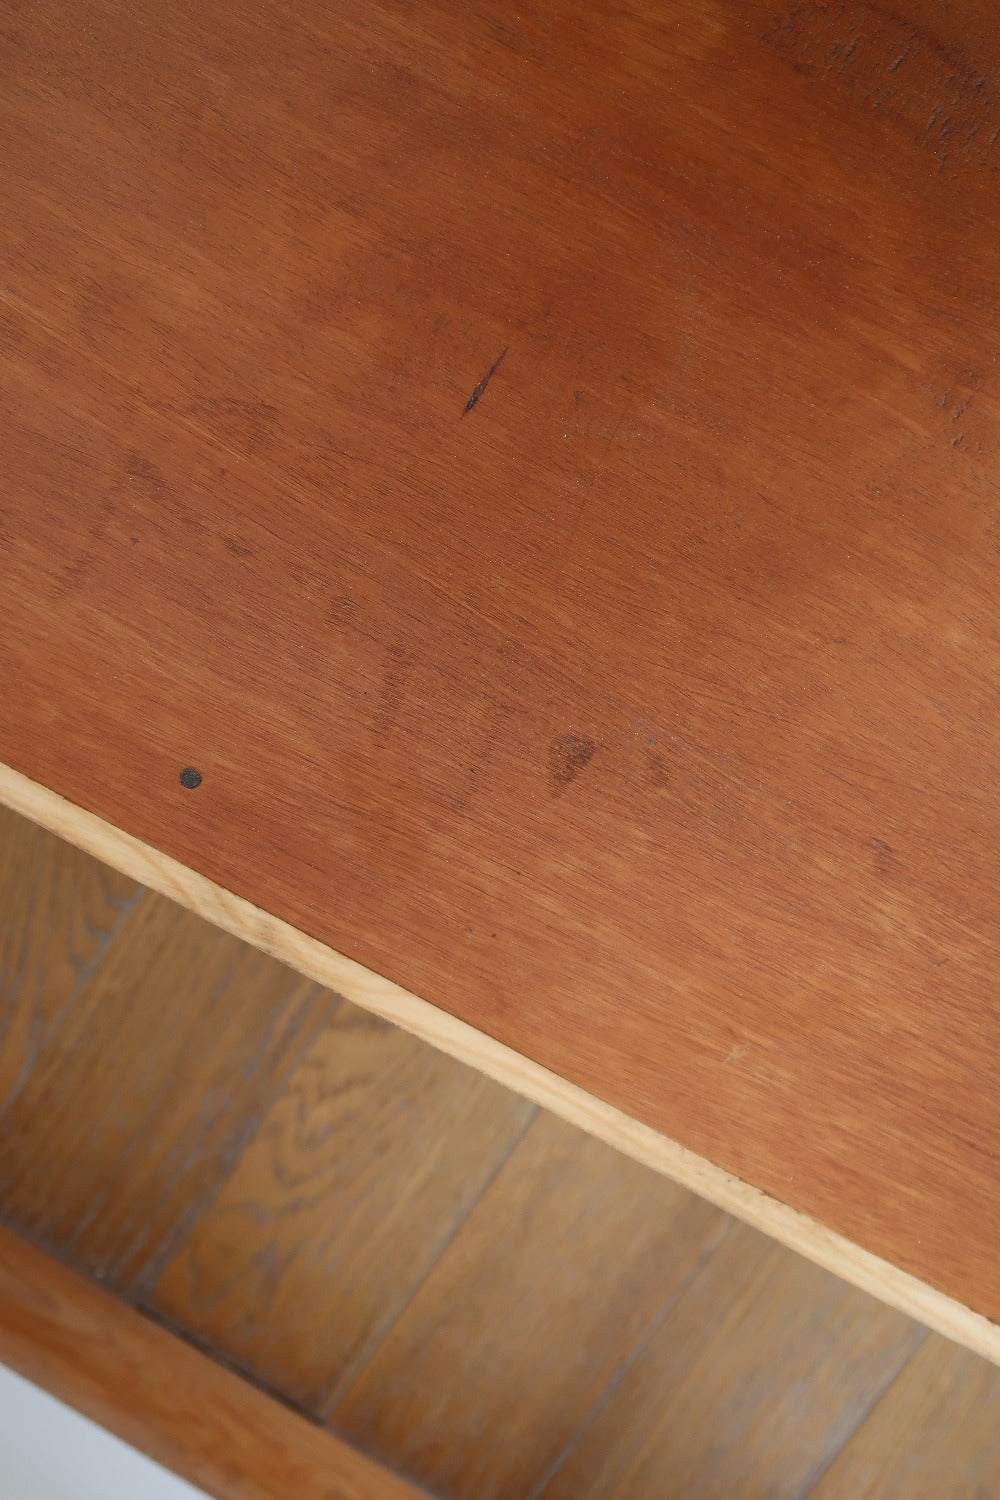 banc bas bout de canapé grande table de chevet basse meuble entrée chaussure vintage scadinave teck bois pieds compas